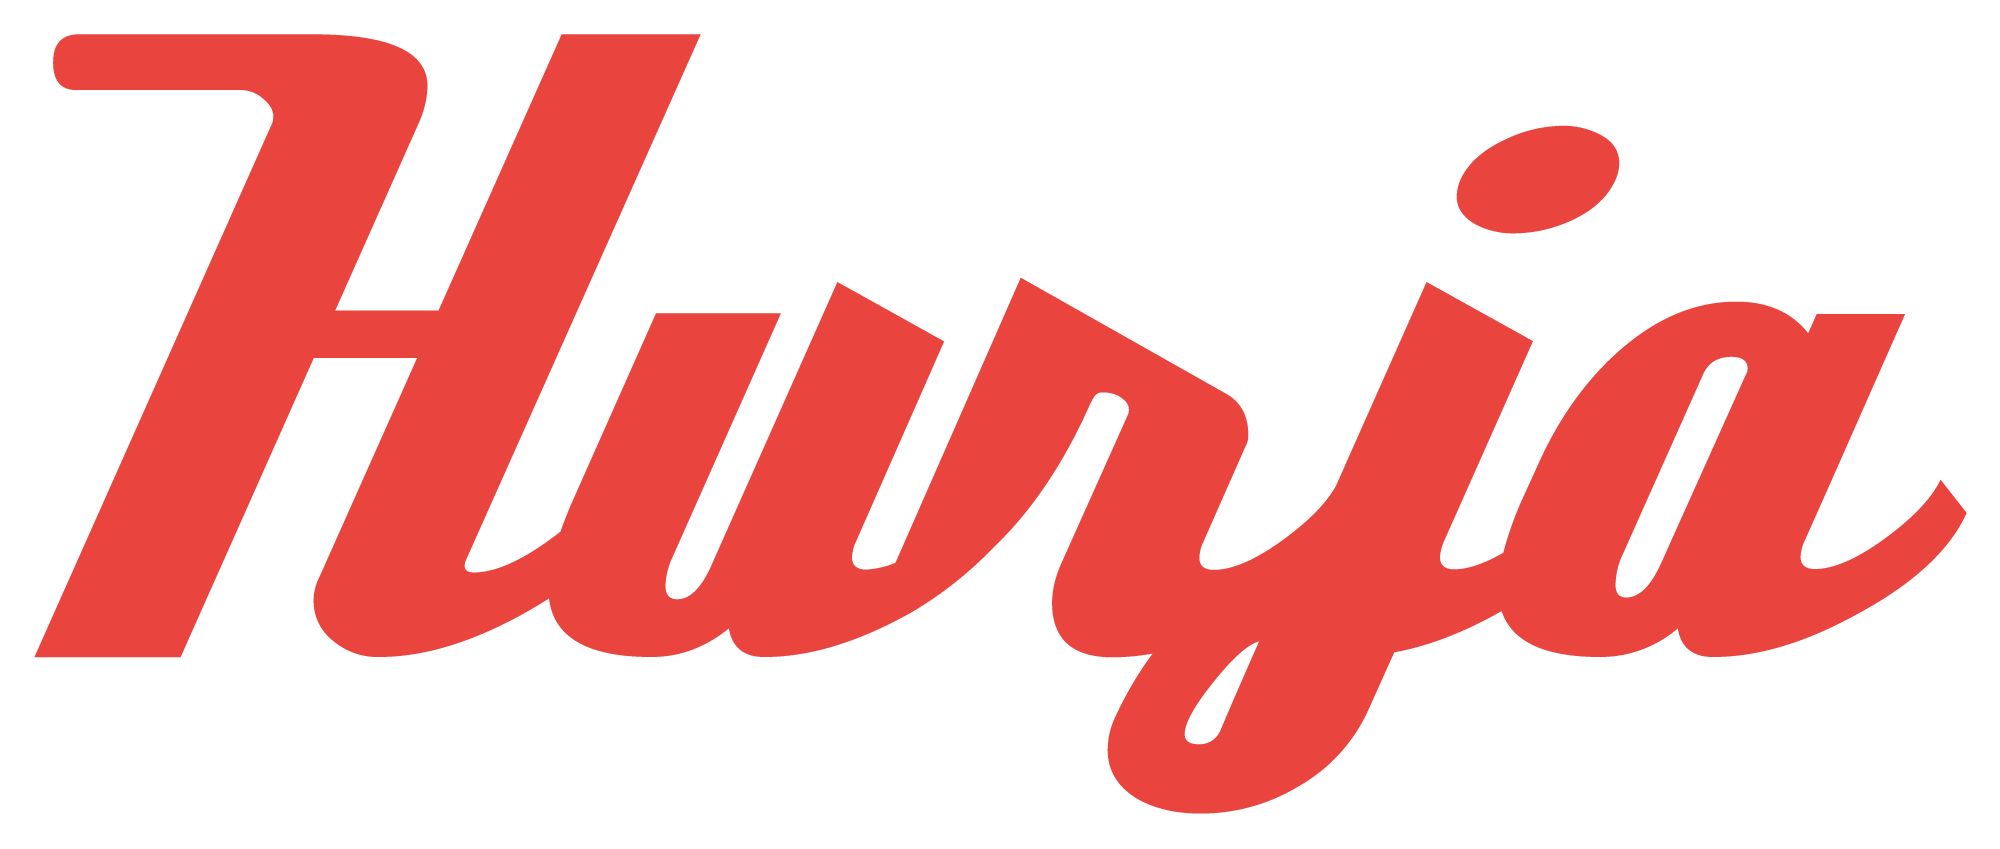 Hurja Solutions logo-1